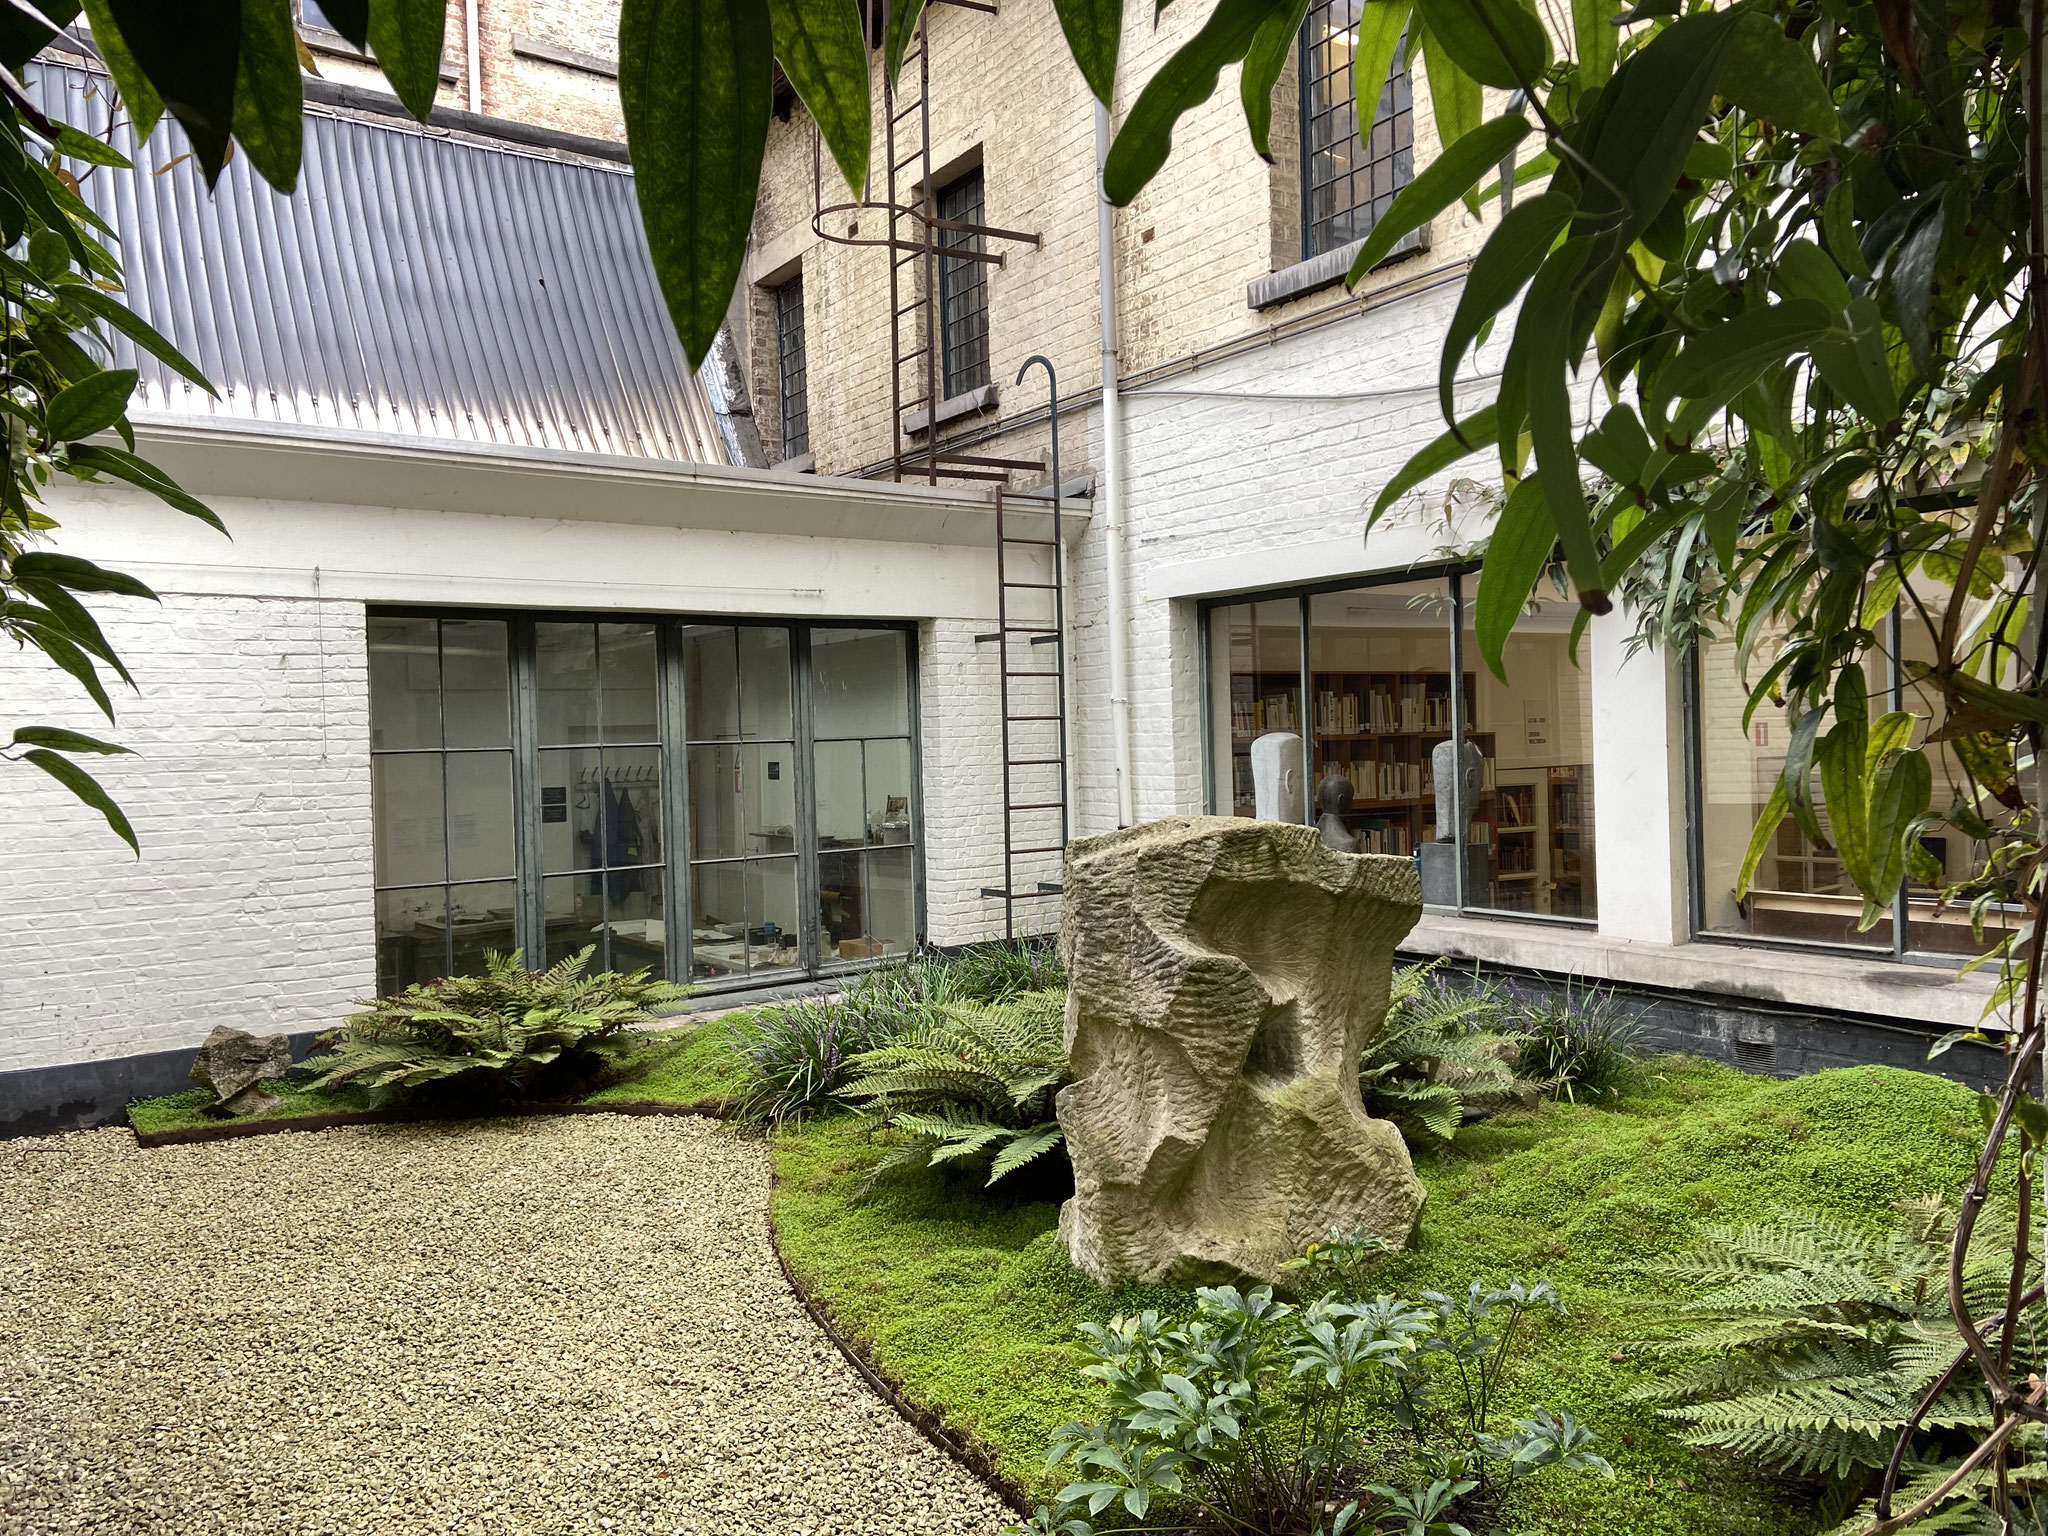 Cour de 60m2 - Style japonais - Année 6. Amenagement jardin Bruxelles